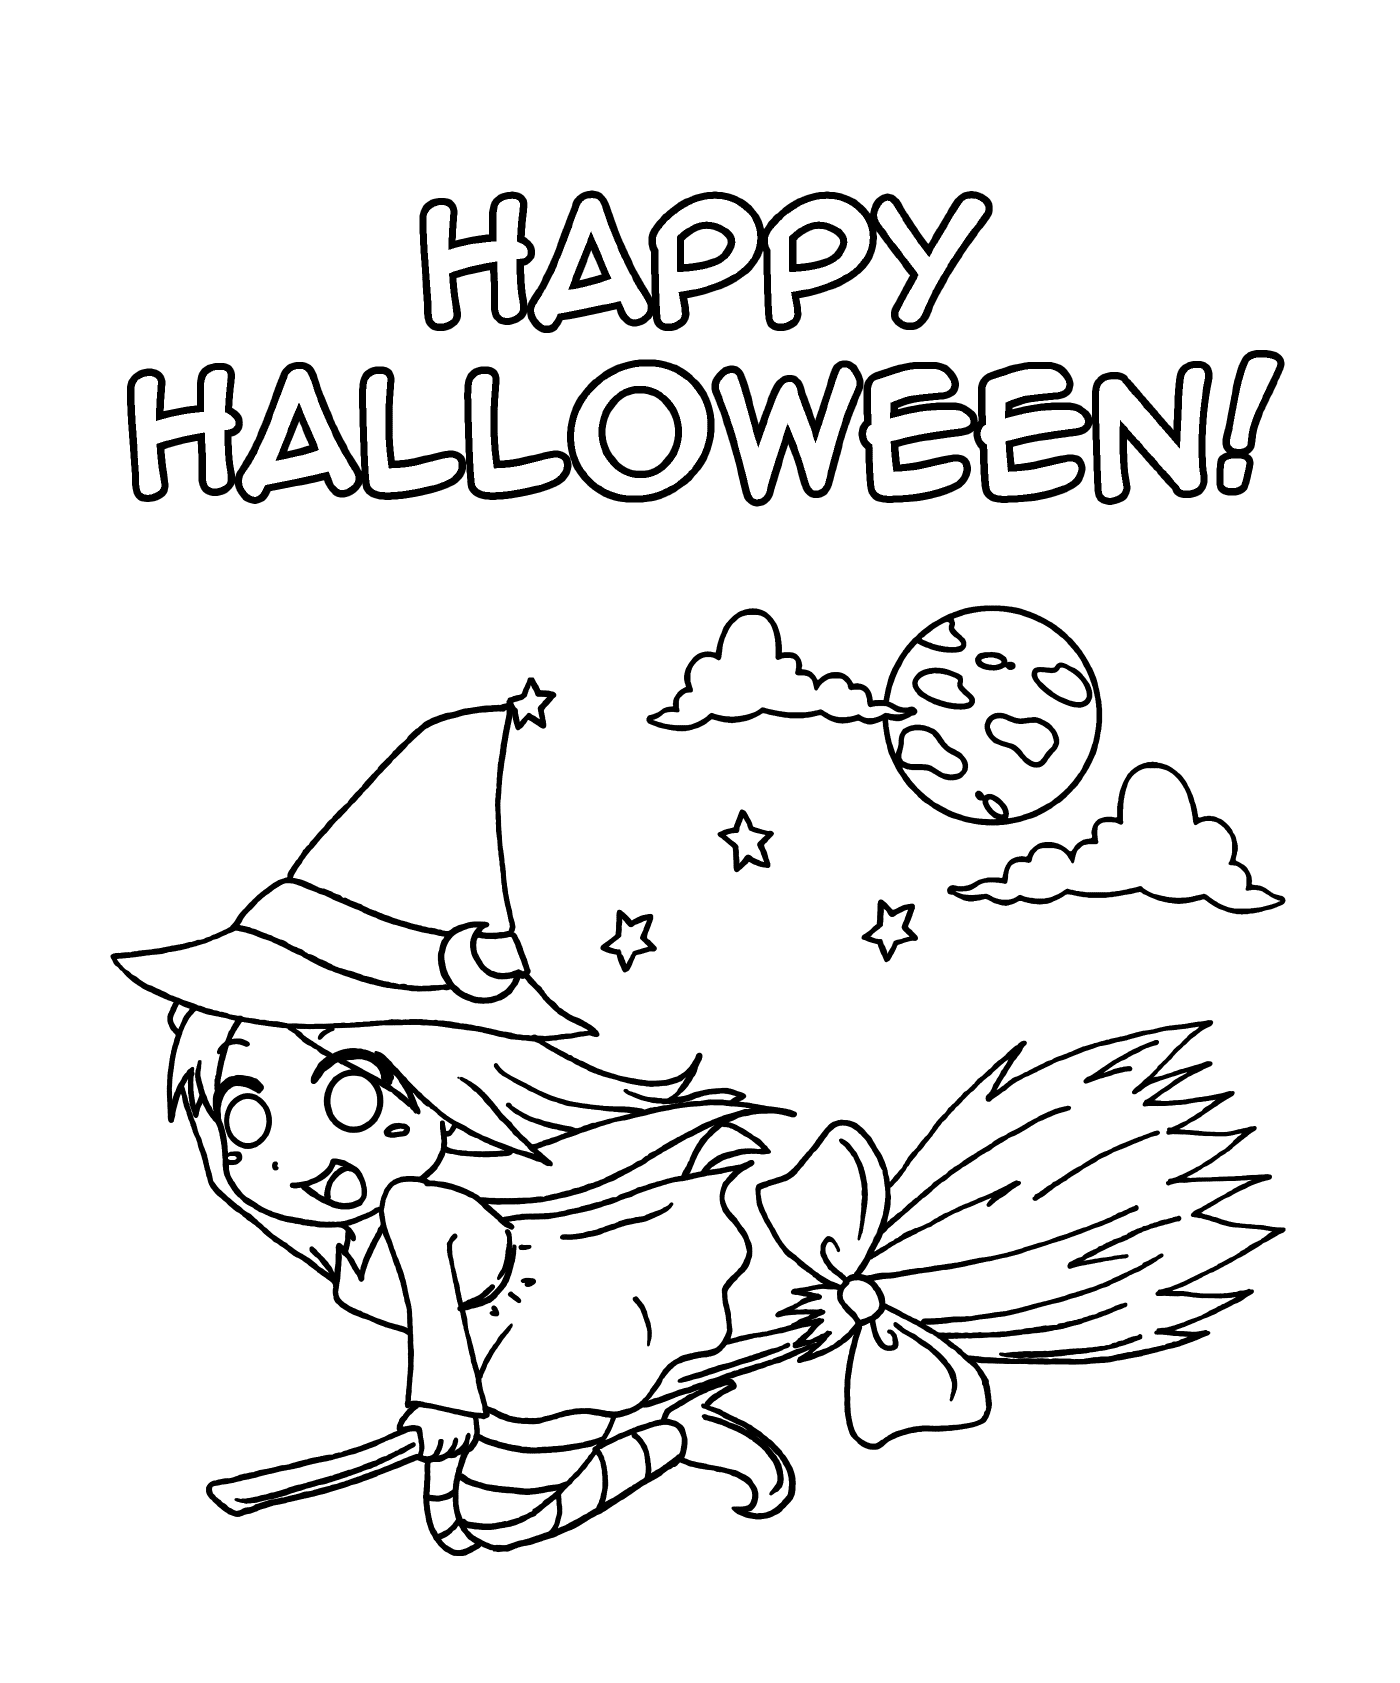  Happy Halloween Manga Witches 